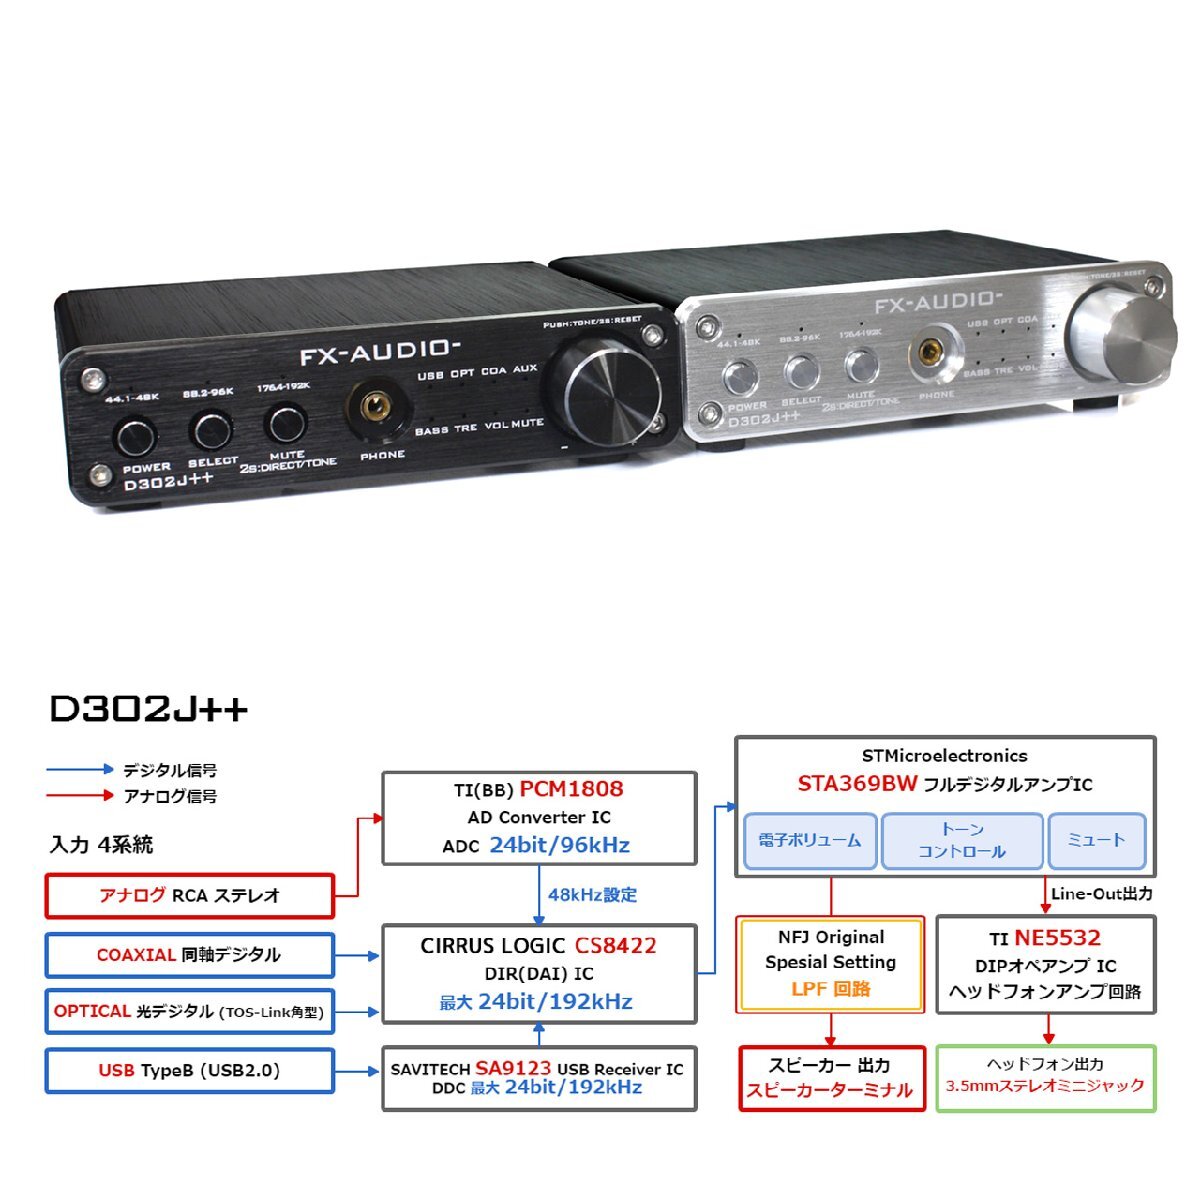 FX-AUDIO- D302J++[ブラック] ハイレゾ対応デジタルアナログ4系統入力・フルデジタルアンプ USB 光 オプティカル 同軸 最大24bit 192kHz_画像4